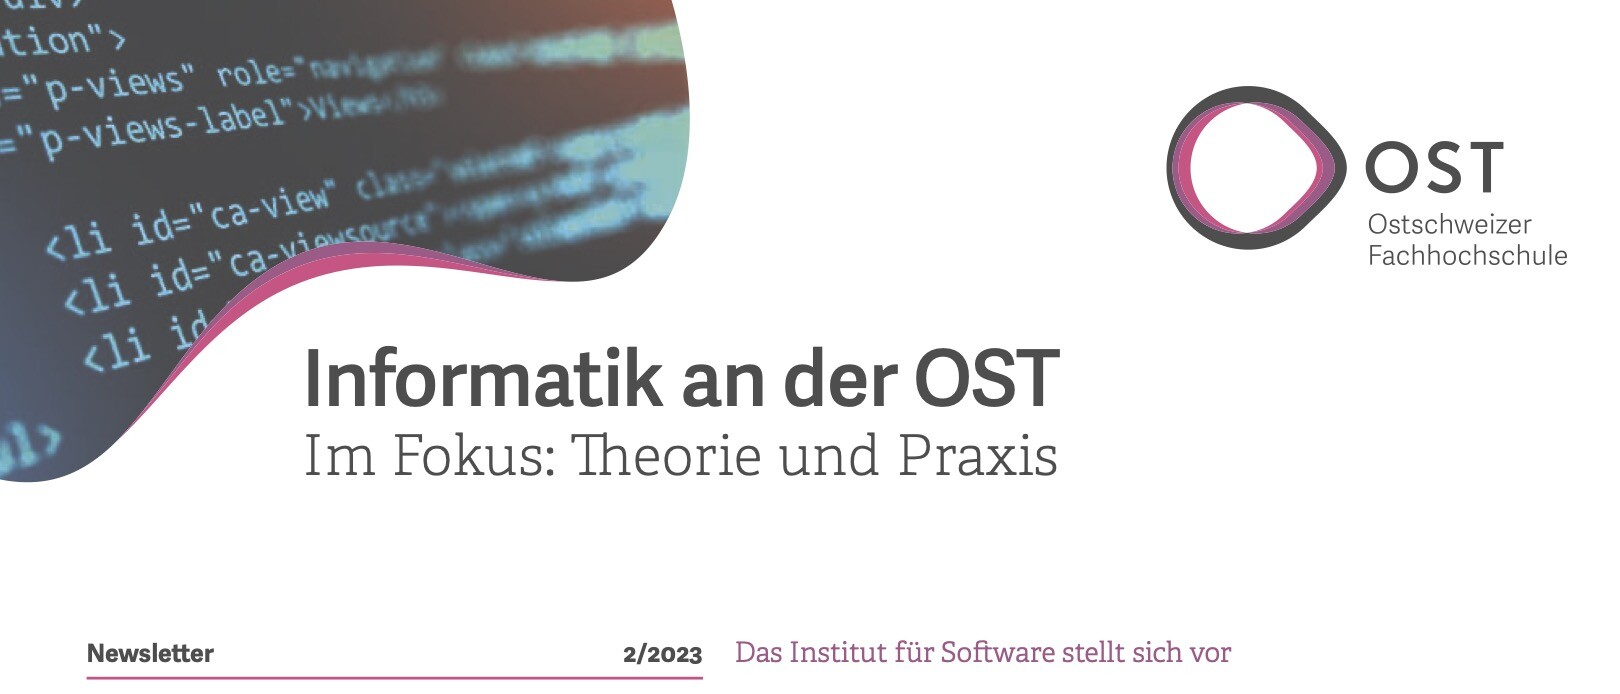 Symbolbild mit Computercode auf dem Newsletter "Informatik an der OST"